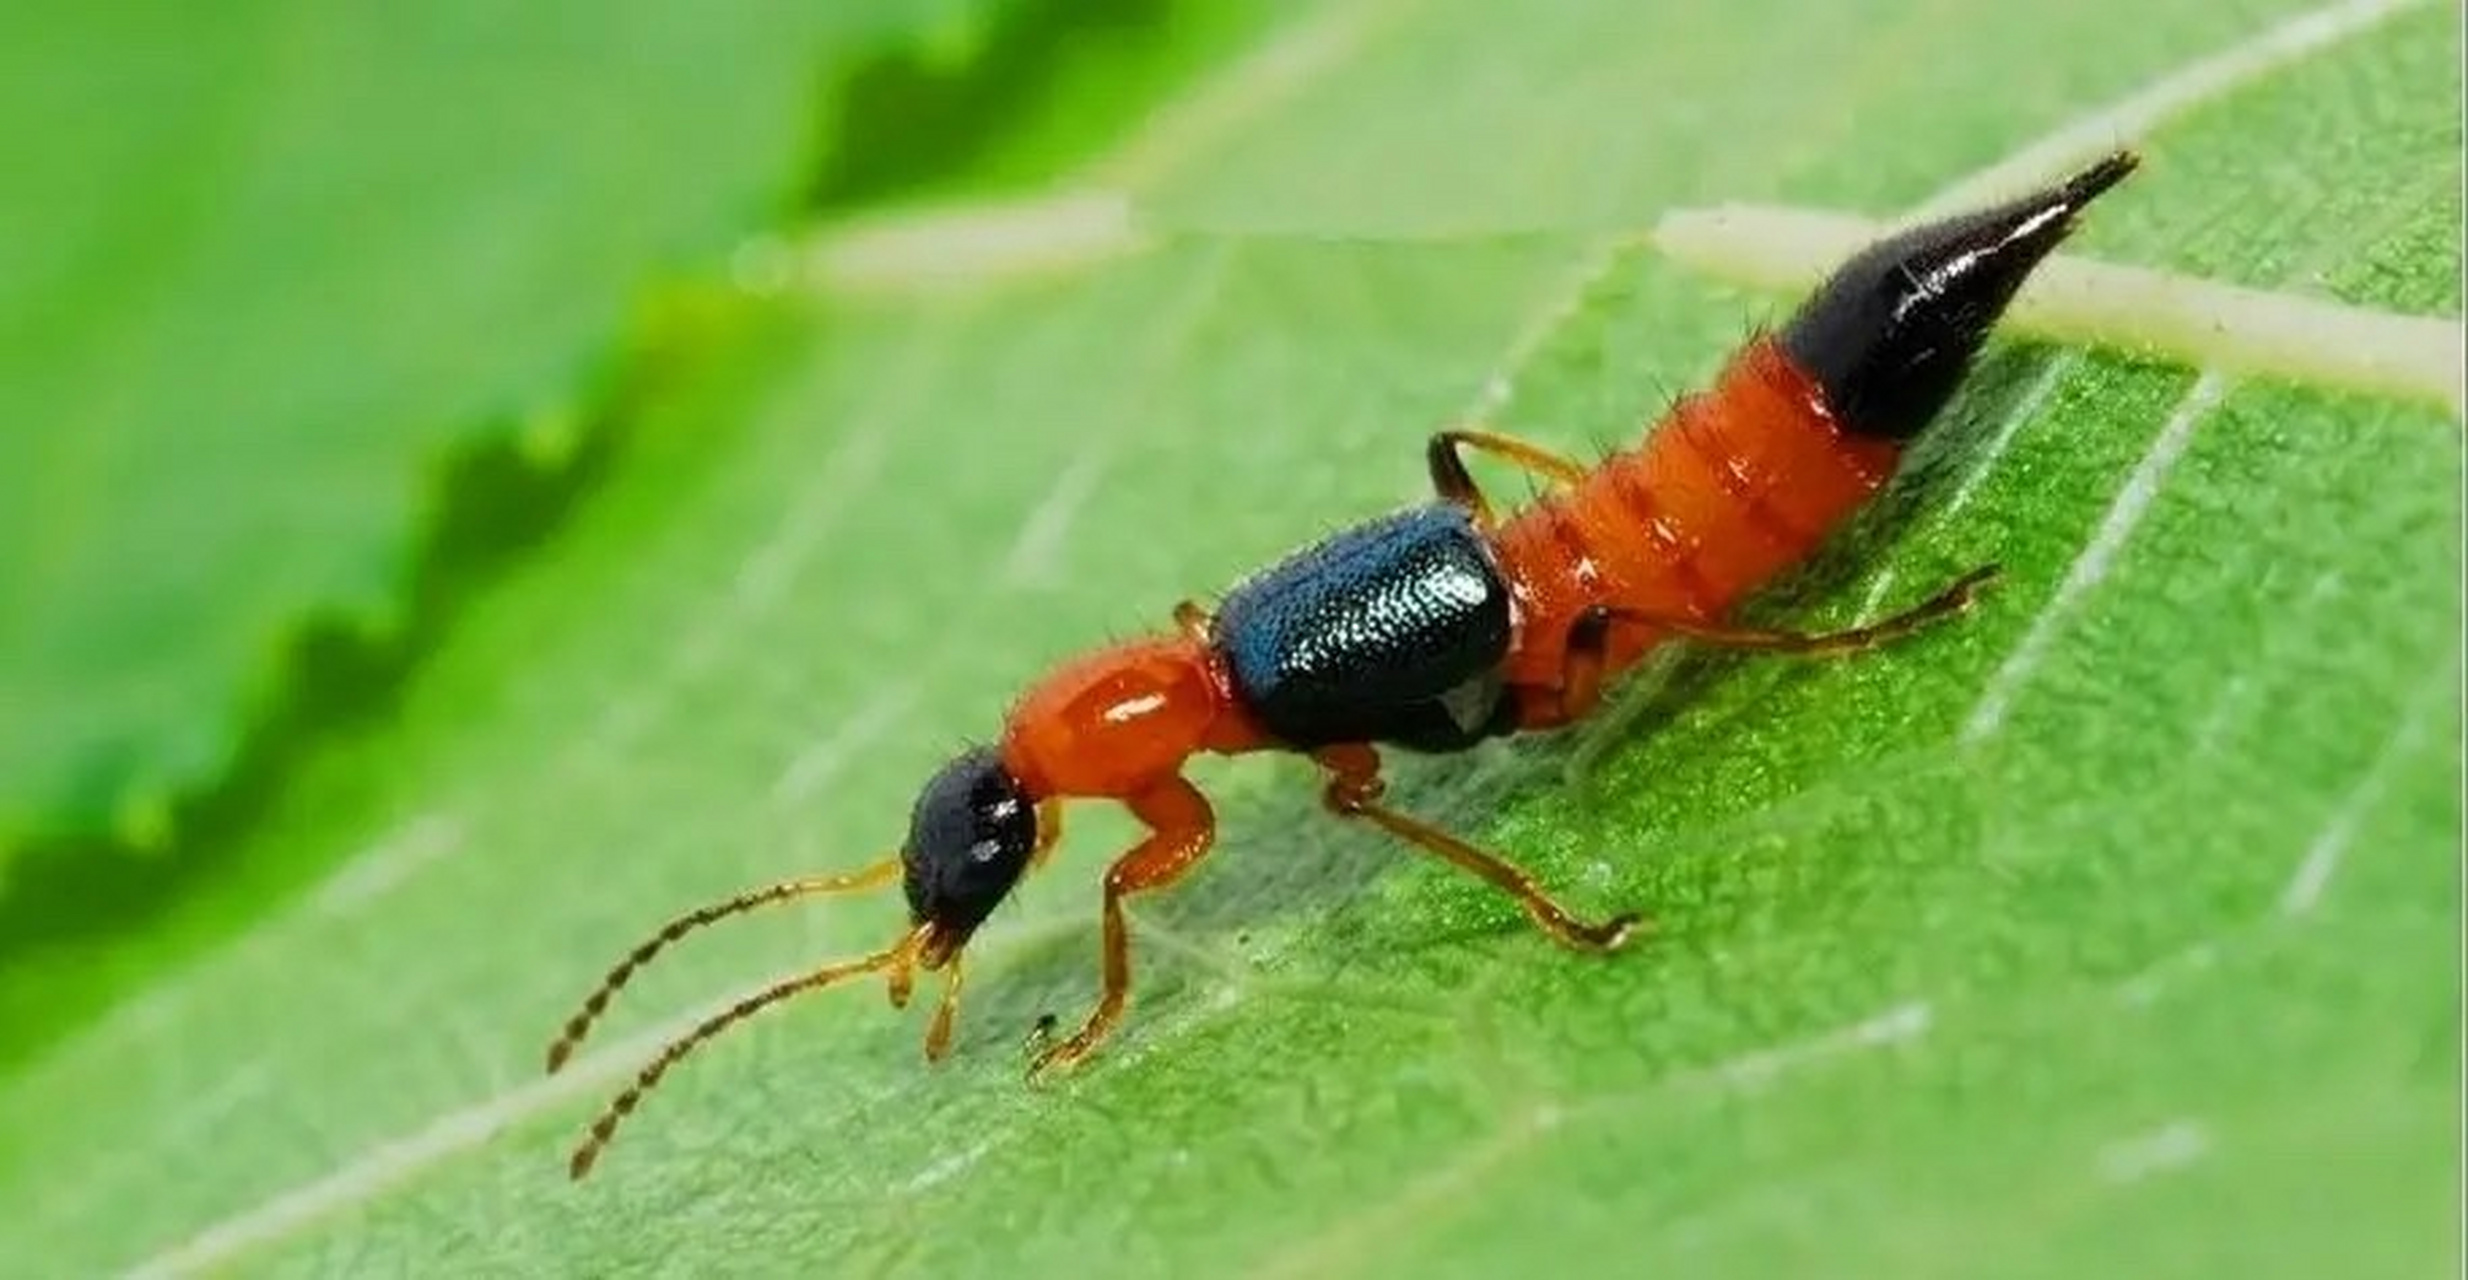 隐翅虫又称会飞的硫酸,遇到这种虫子可以将其吹飞或者剧烈甩动,使其